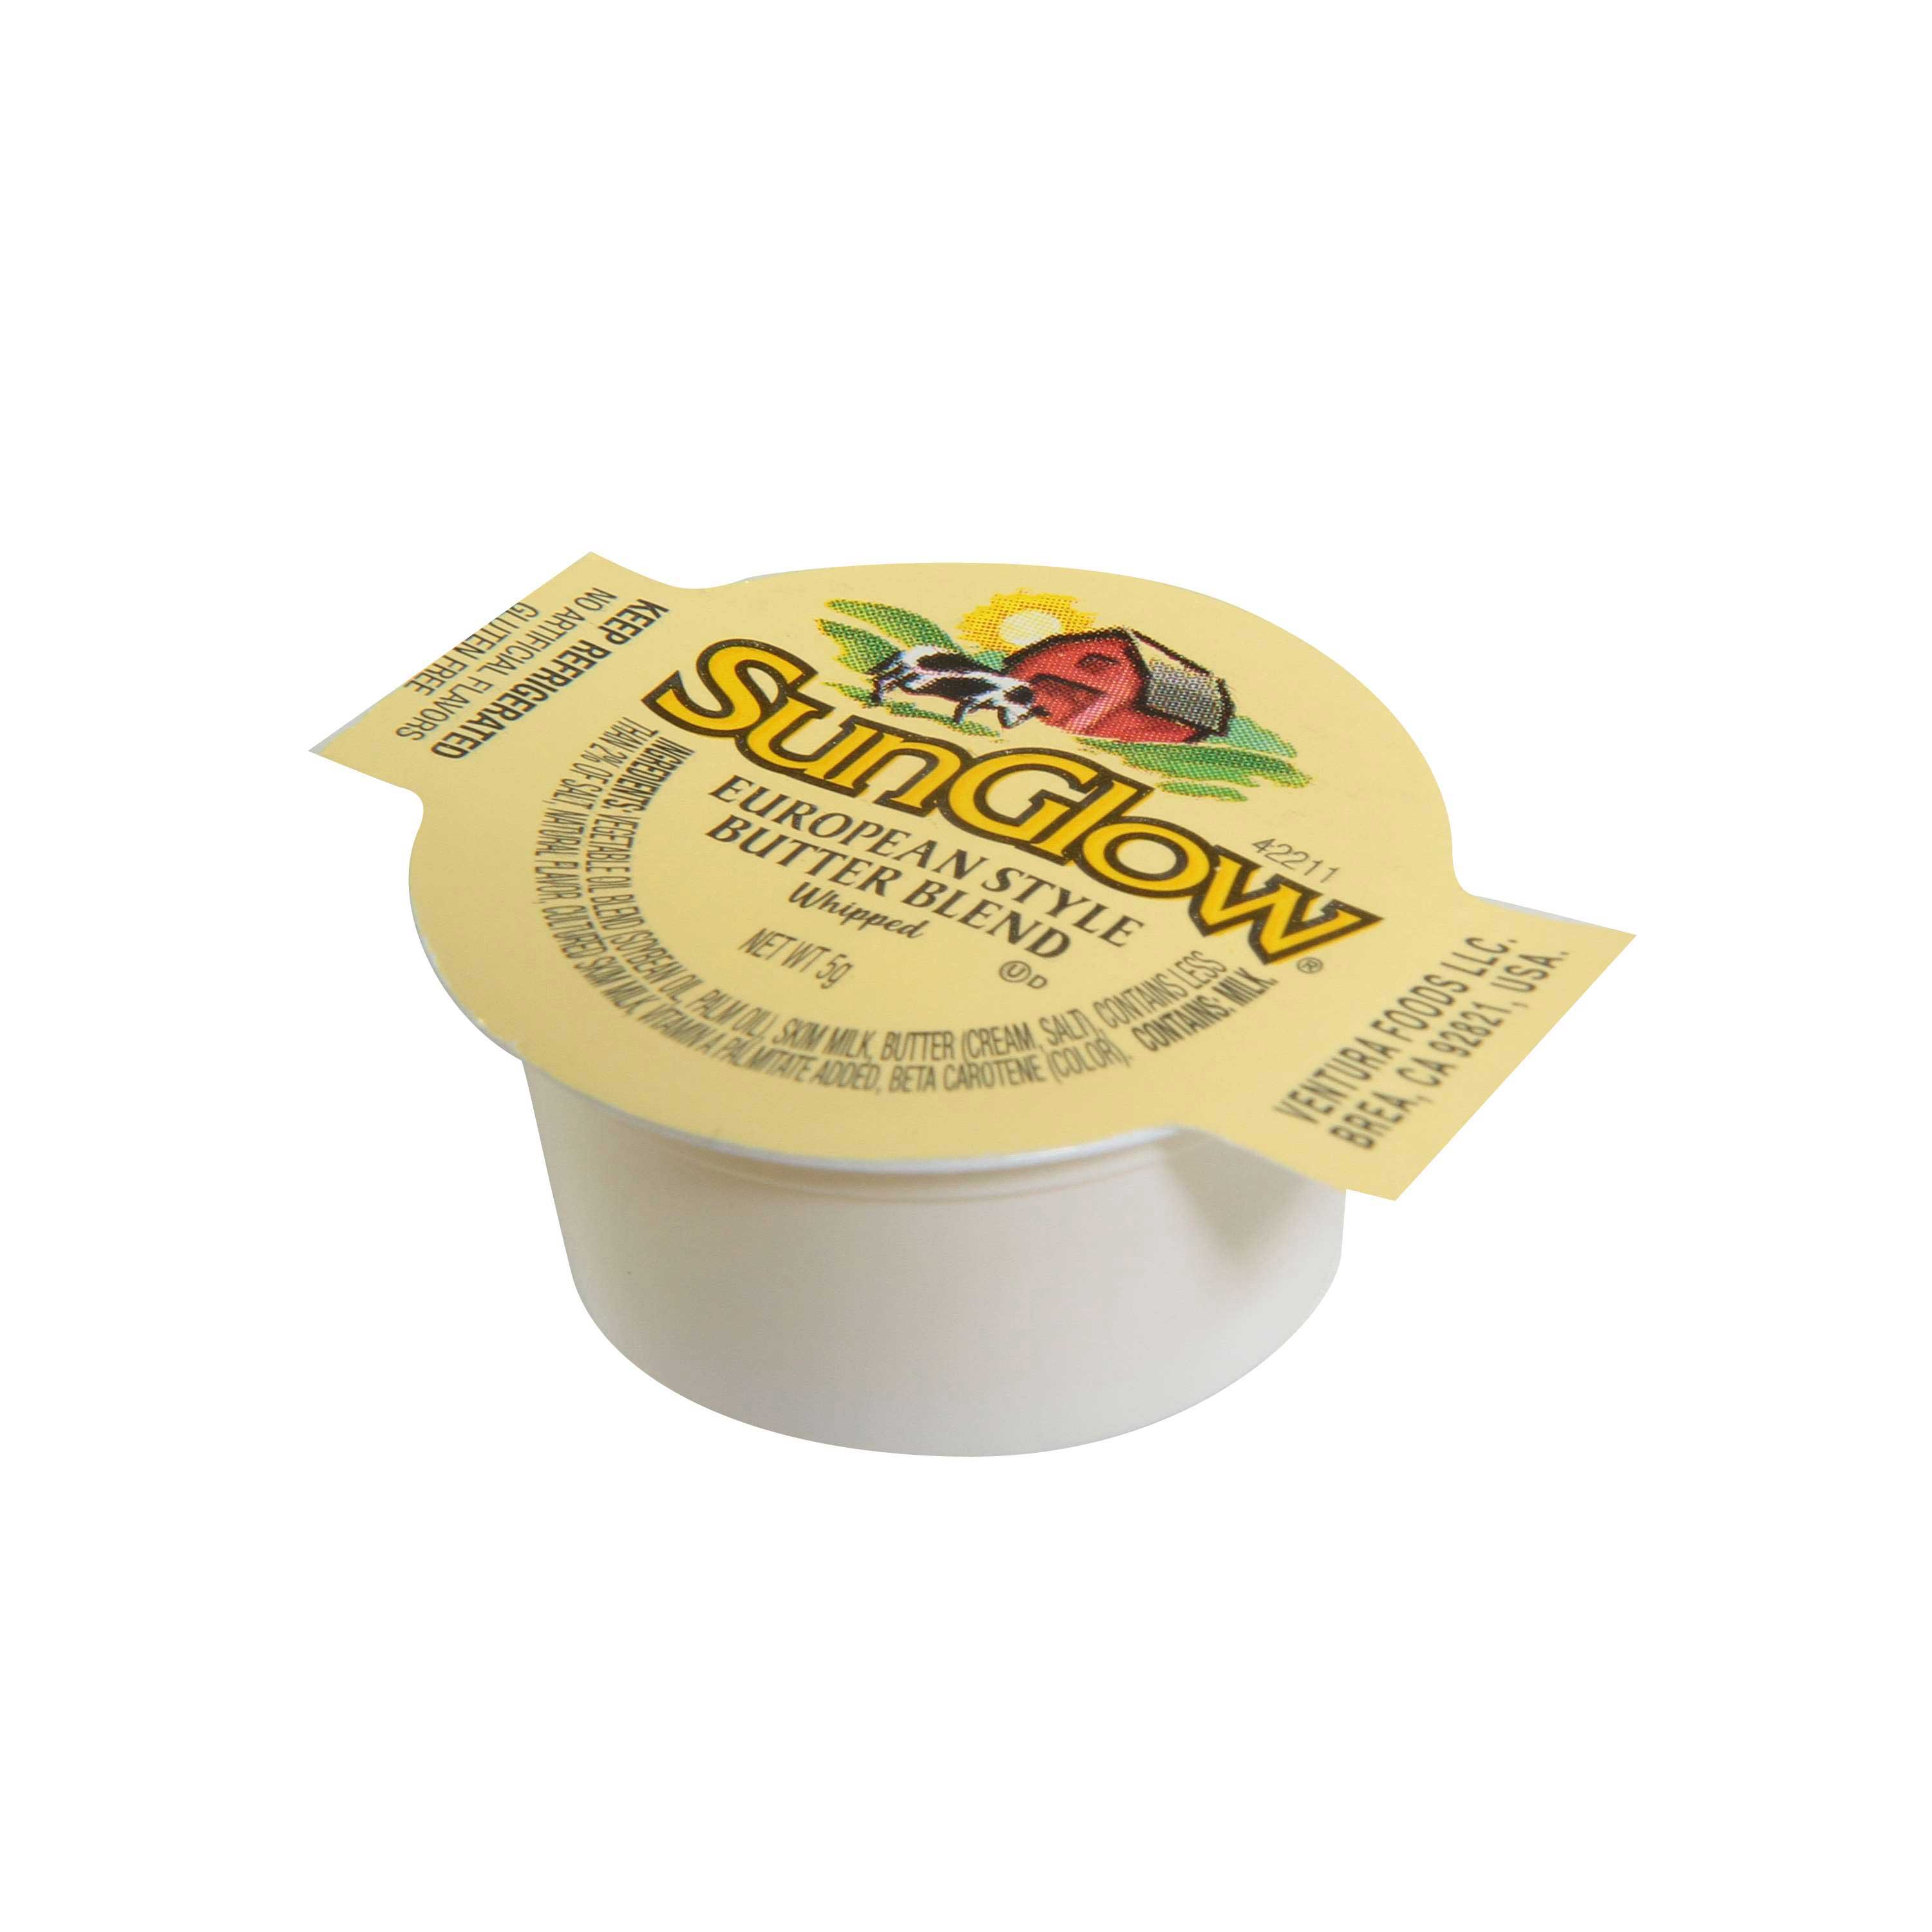 SunGlow European Style Butter Blend 